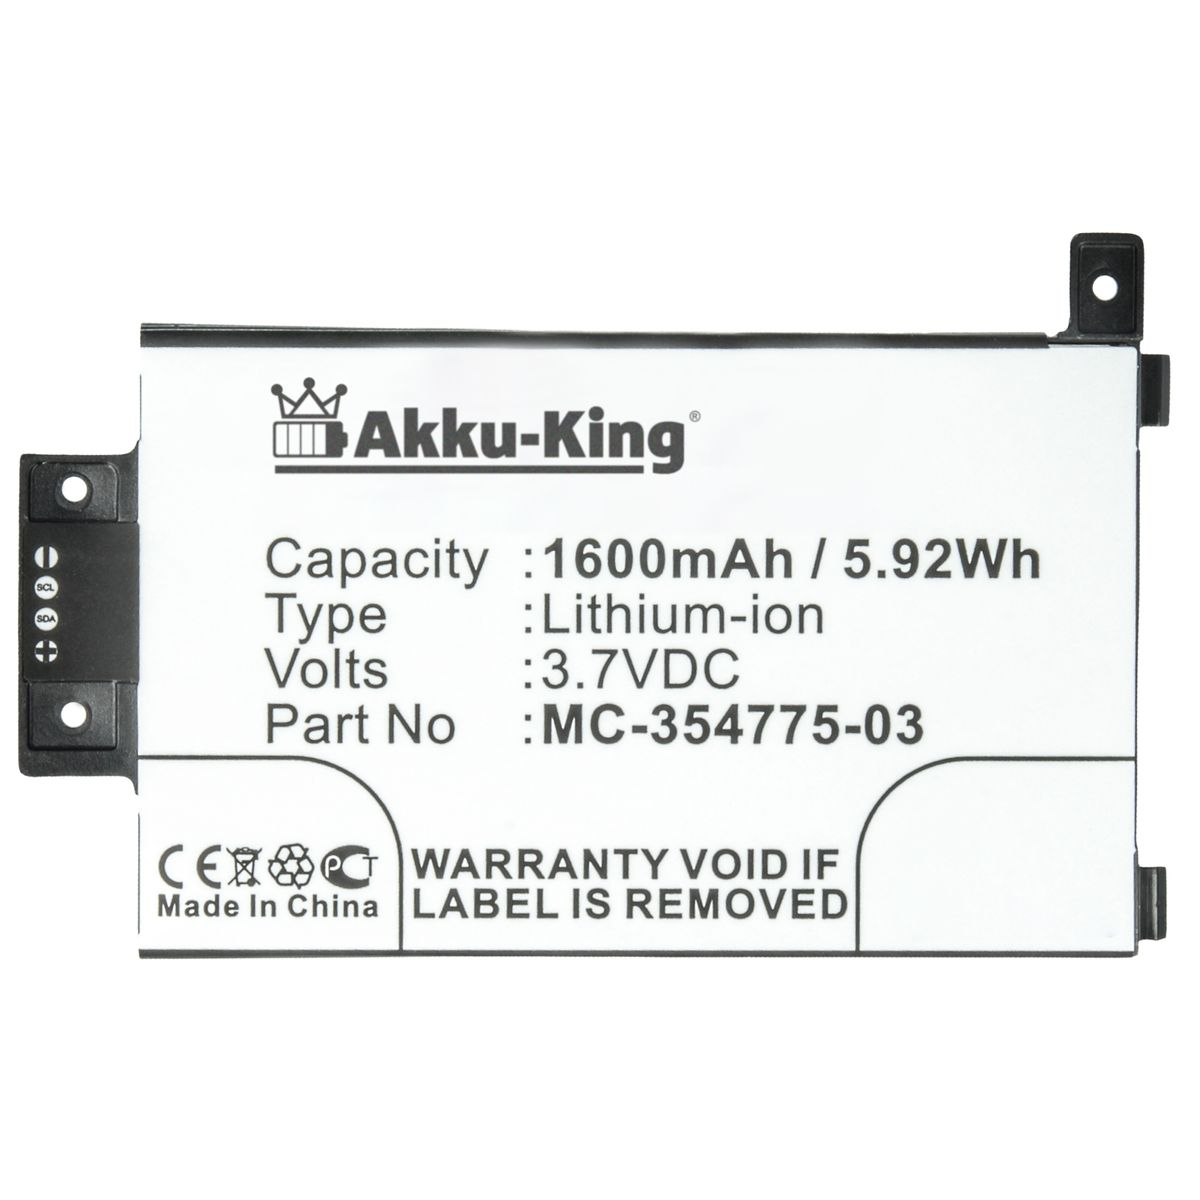 mit AKKU-KING kompatibel Li-Ion Geräte-Akku, 3.7 Amazon Akku Volt, MC-354775-03 1600mAh